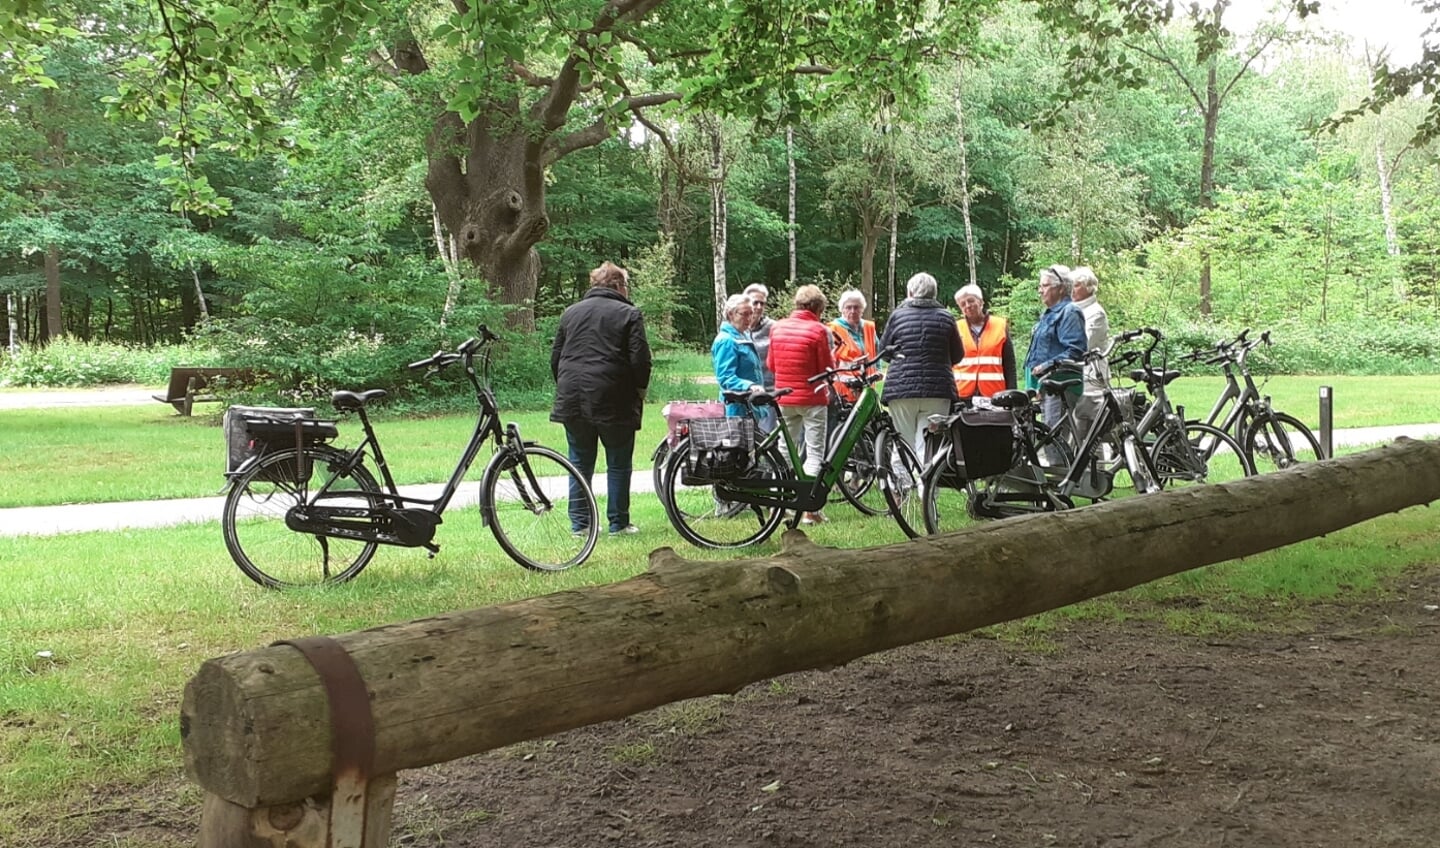 De deelnemers aan de fietstocht pauzeren even in het bos.